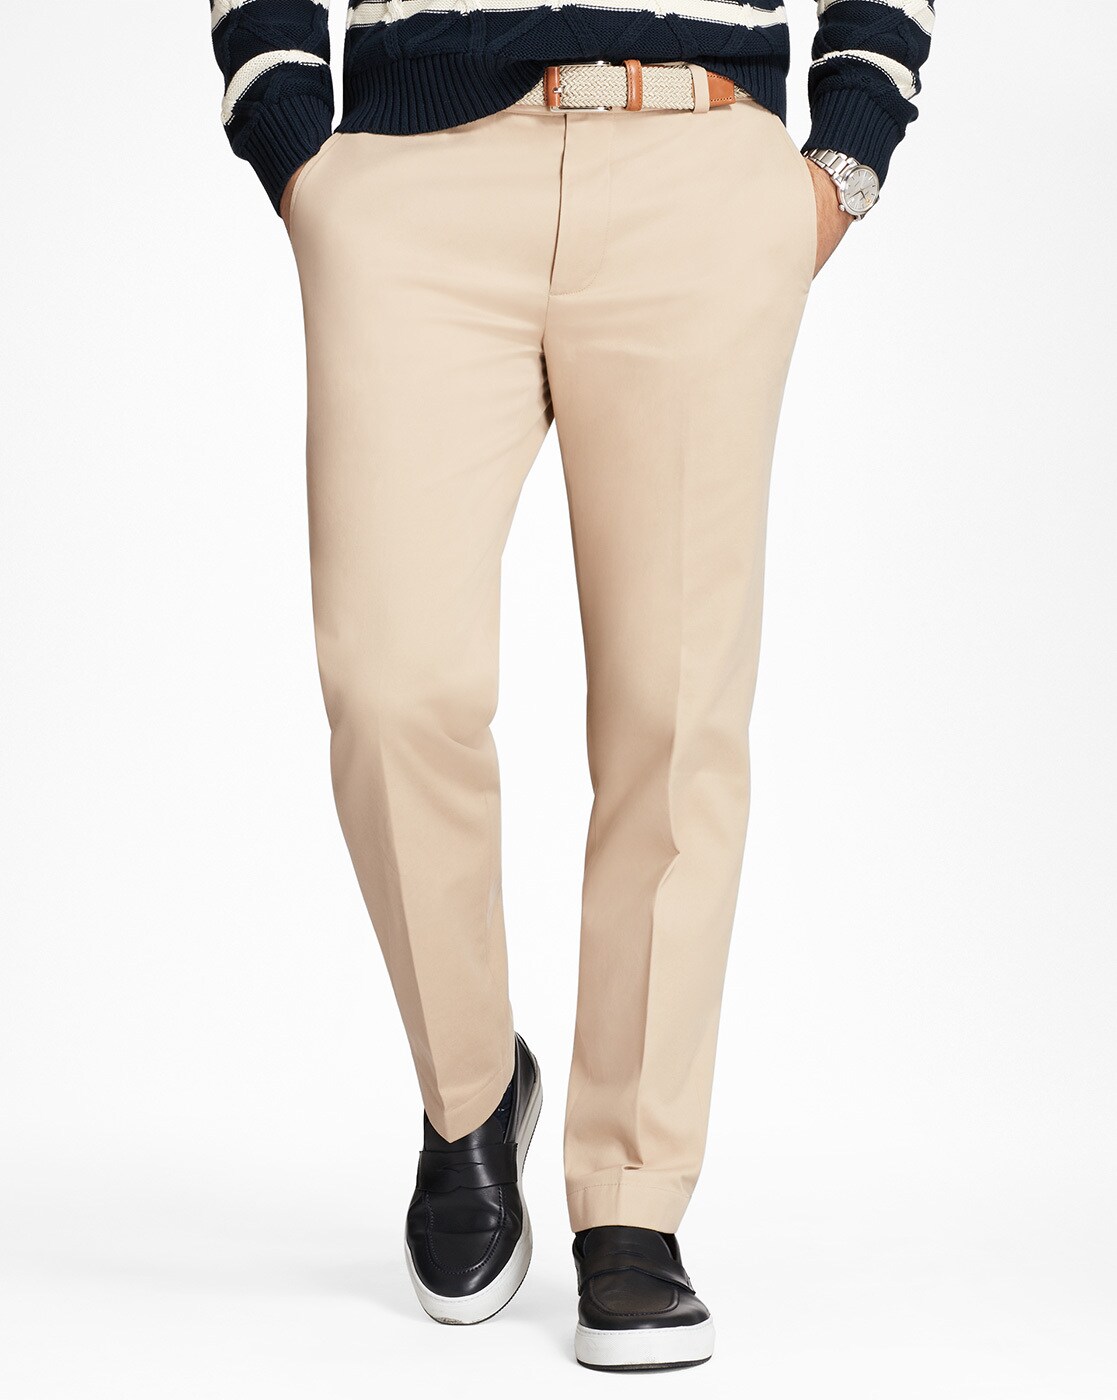 Allen Solly Casual Trousers  Buy Allen Solly Beige Trouser Online  Nykaa  Fashion